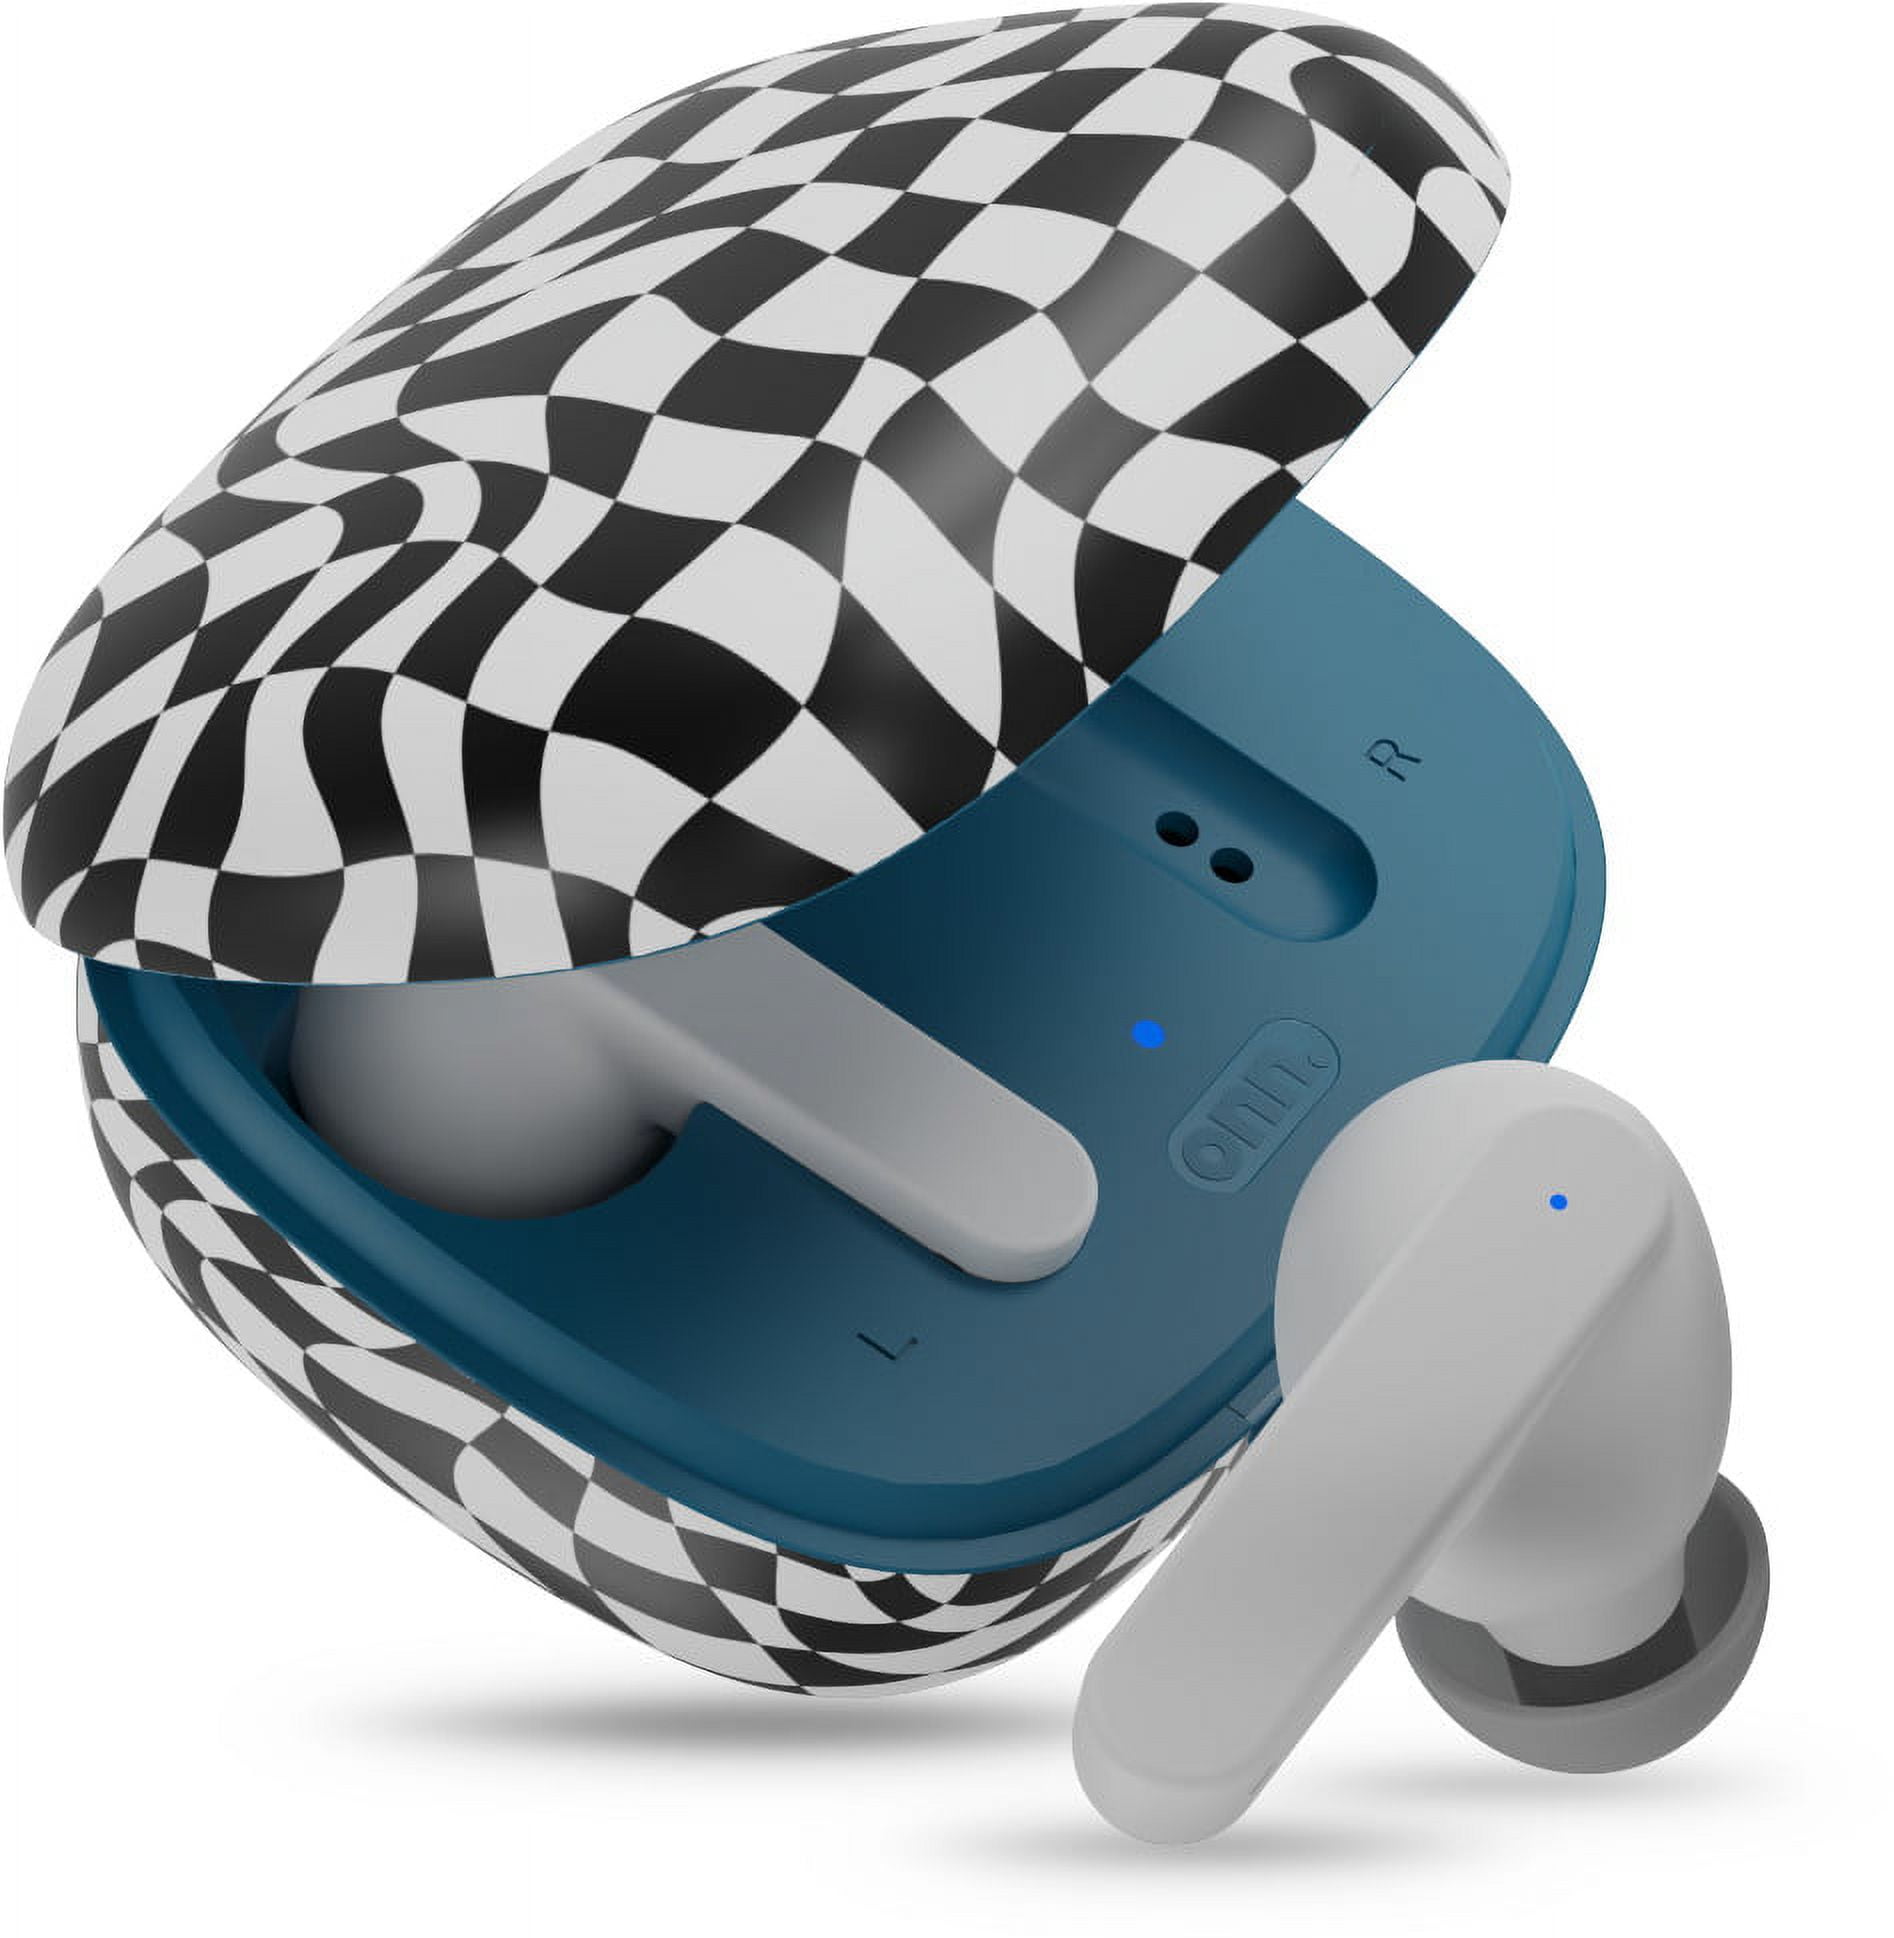 onn. Wireless In-Ear Bluetooth Earphones with Charging Case, Blue